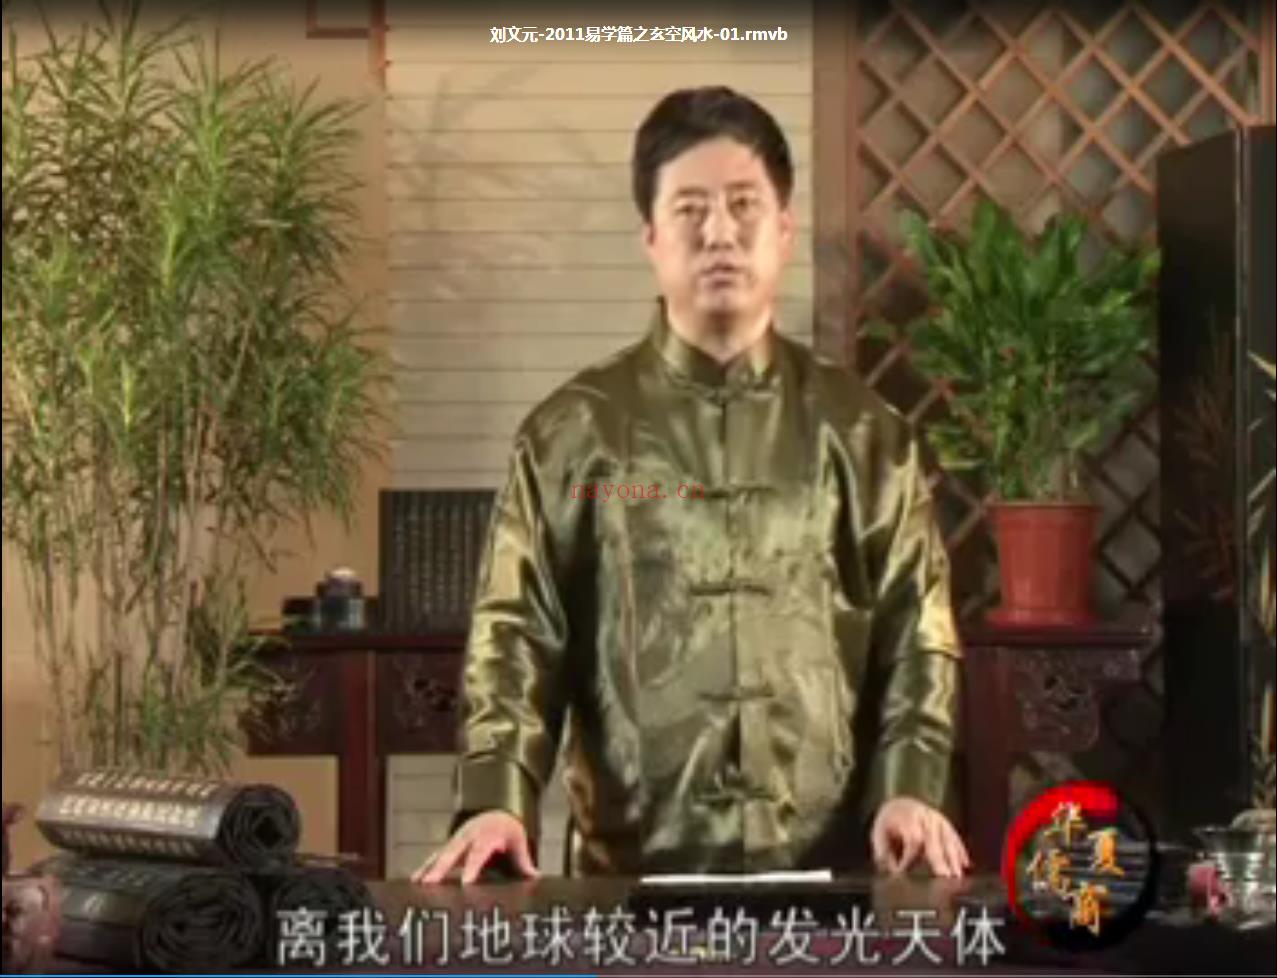 刘文元-玄空风水学2011年教程视频12集(刘文元玄空风水21-3)